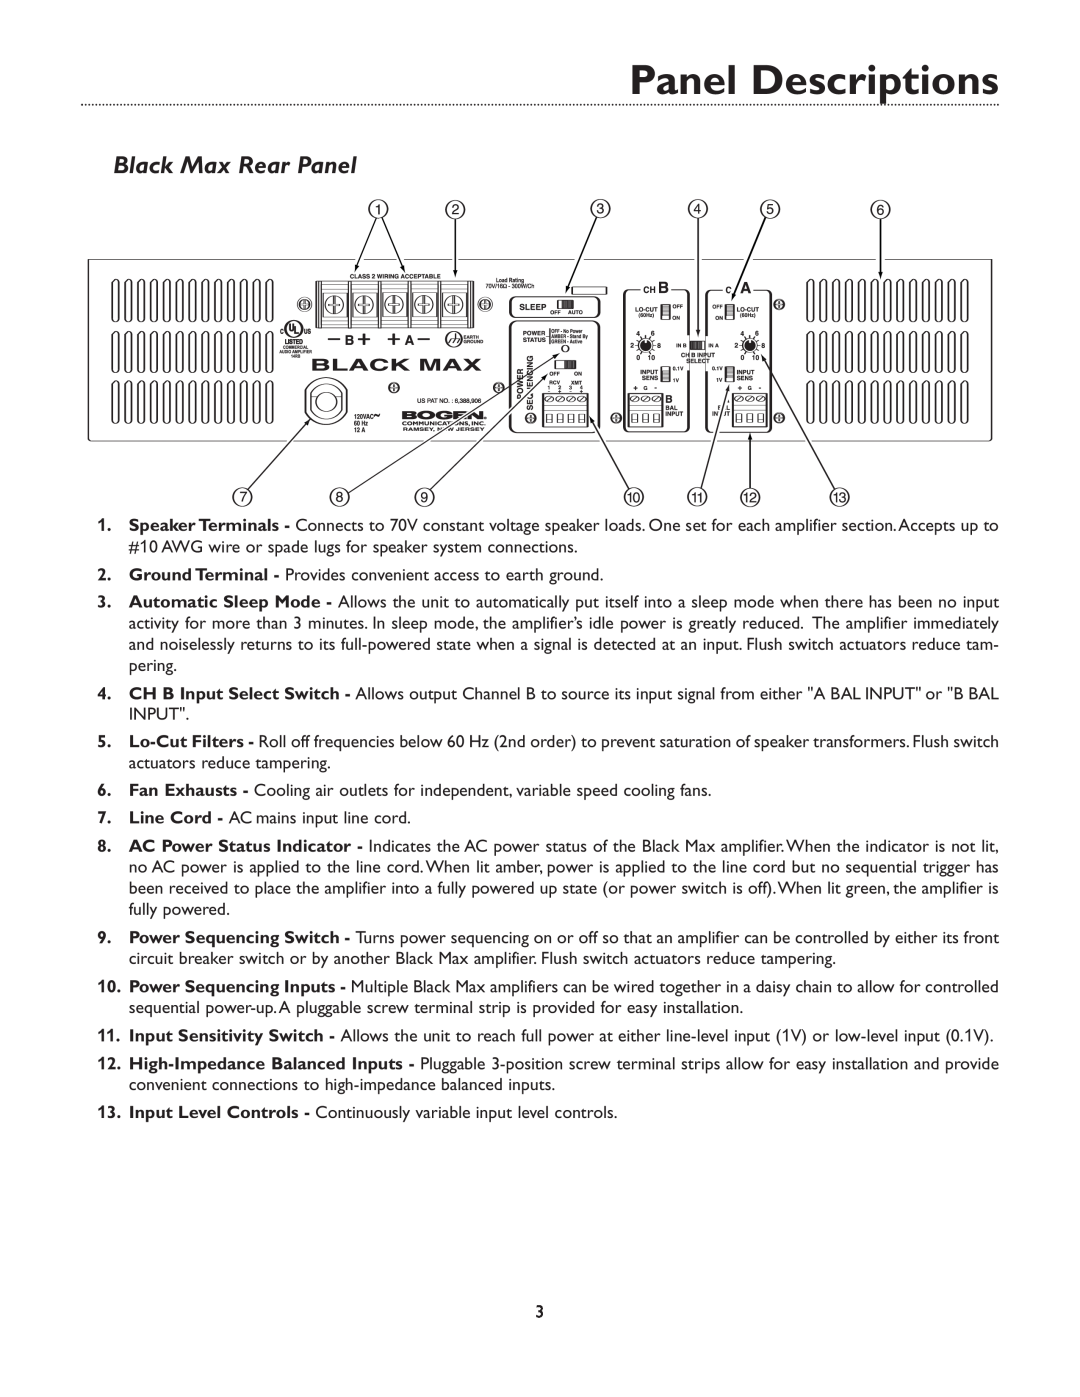 Bogen & X600 manual Black Max Rear Panel, Panel Descriptions 